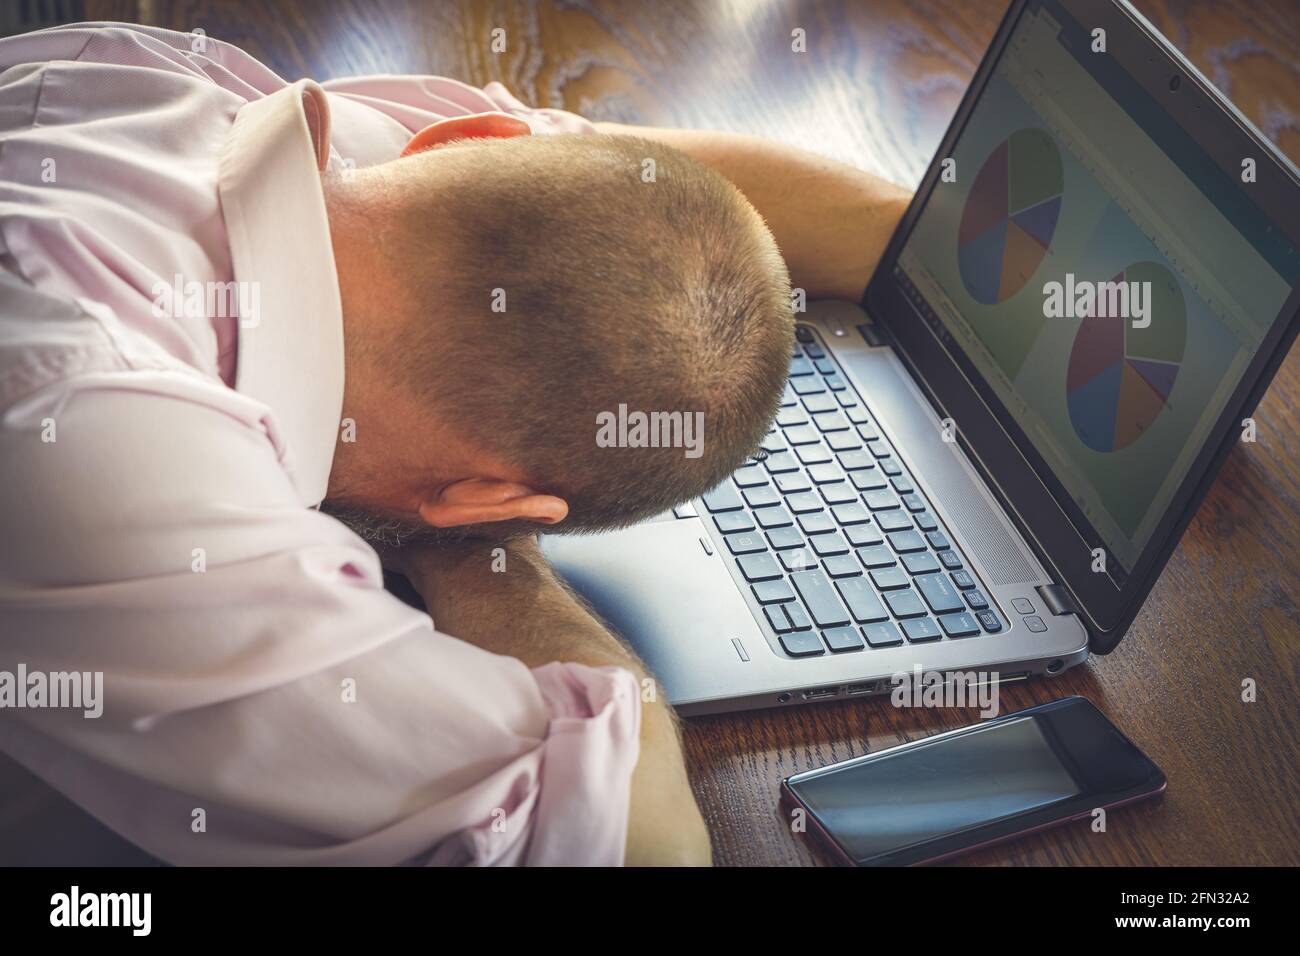 Trabajador de oficina cansado que se va de casa, teniendo la siesta junto al ordenador portátil Foto de stock